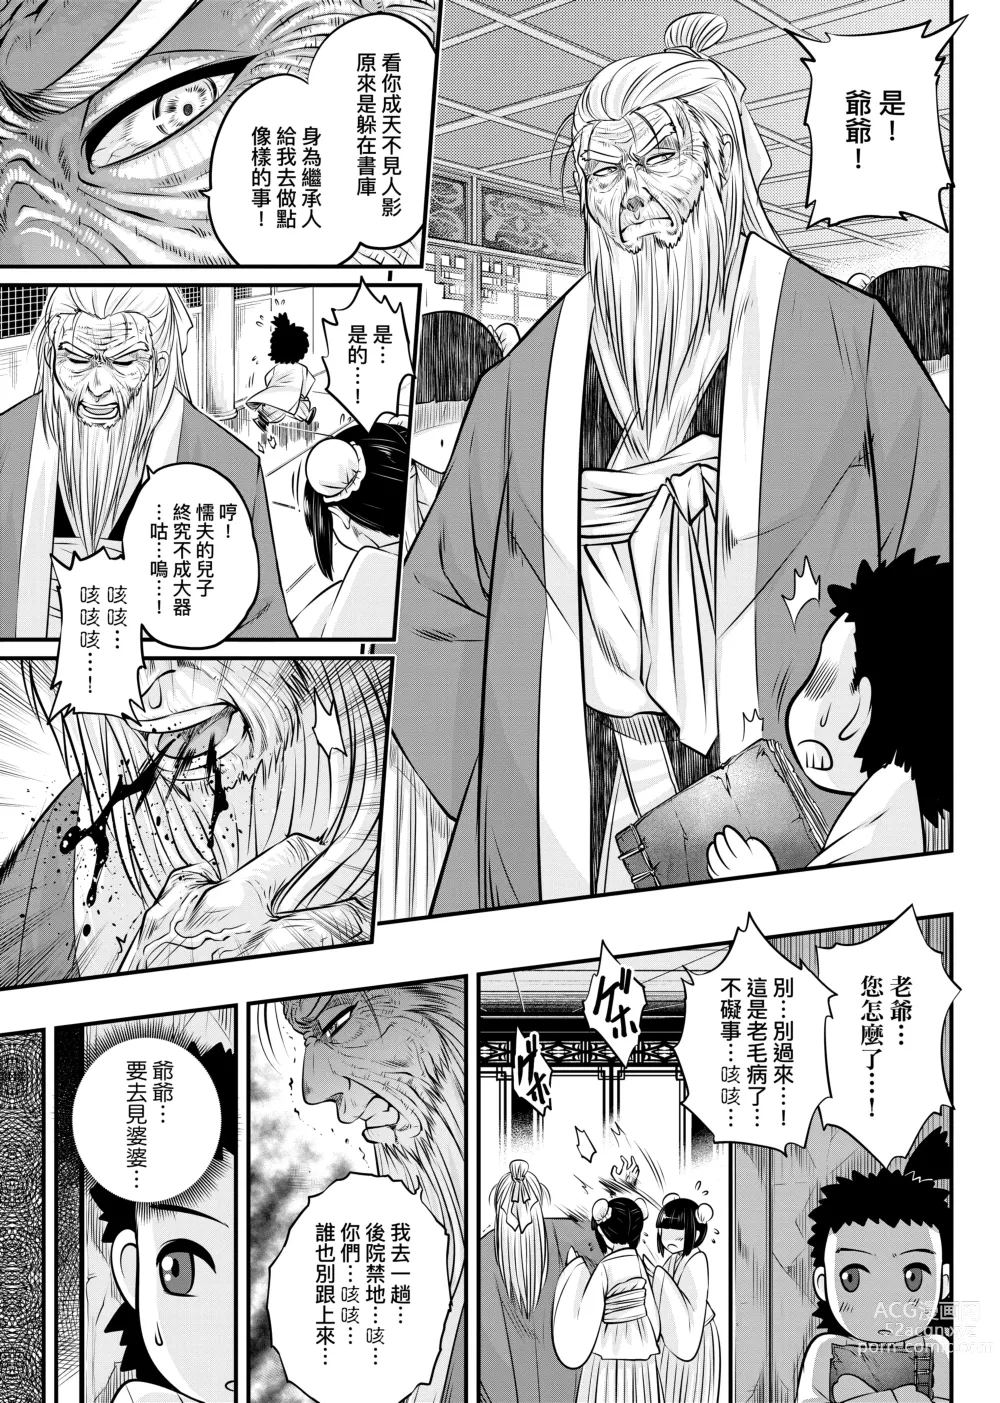 Page 12 of manga 永世流轉 (decensored)